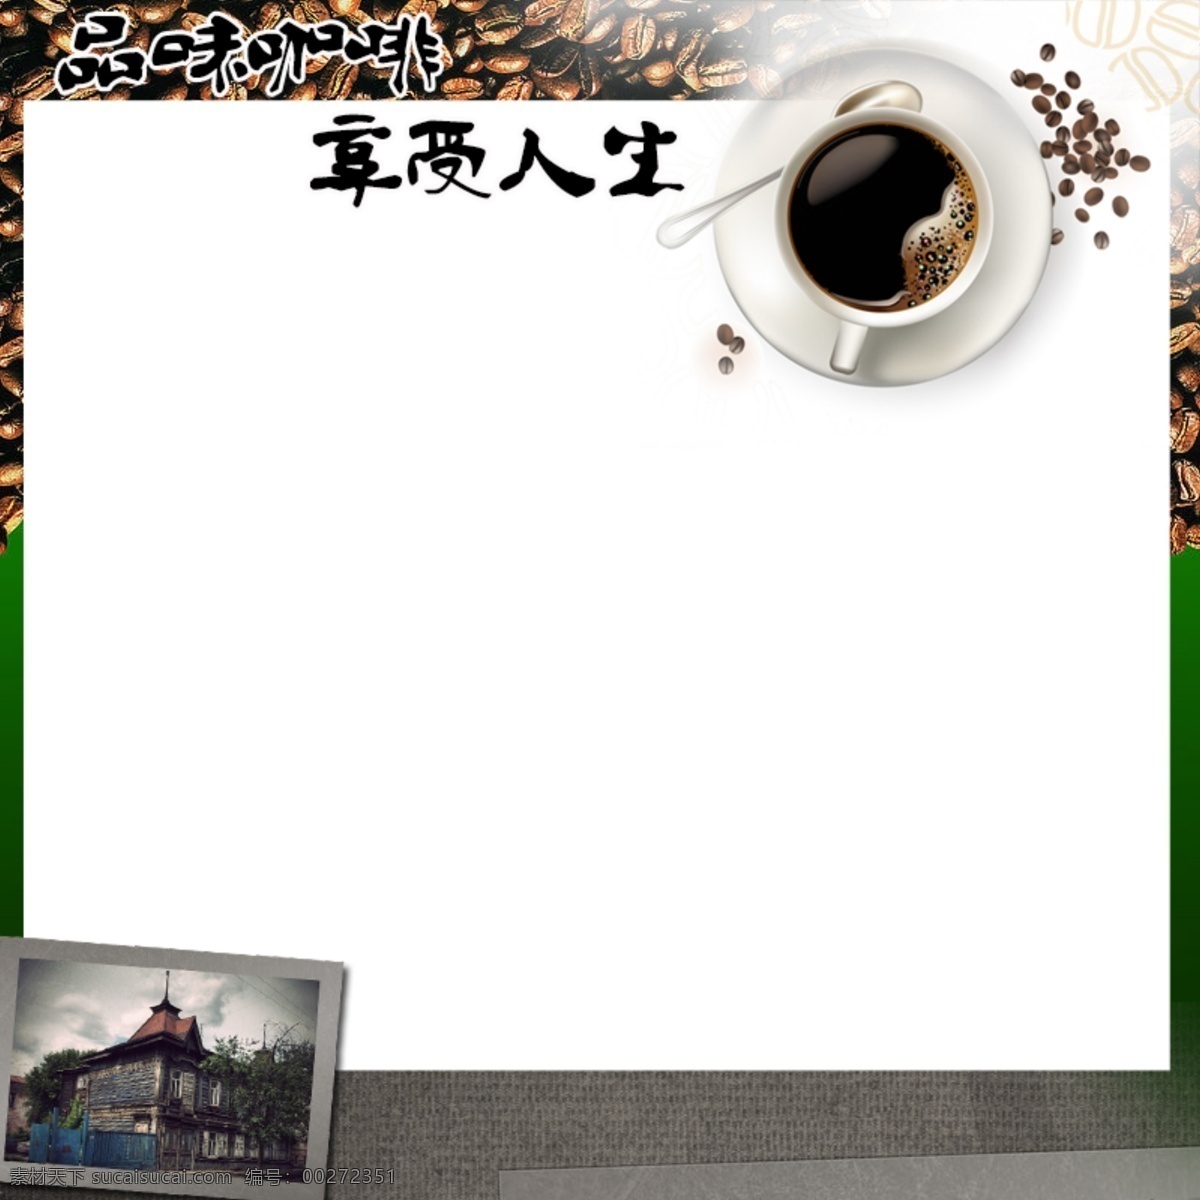 边框 咖啡 淘宝模板 网页模板 源文件 直通车 中文模板 主图模板 网页 咖啡网页 淘宝素材 其他淘宝素材